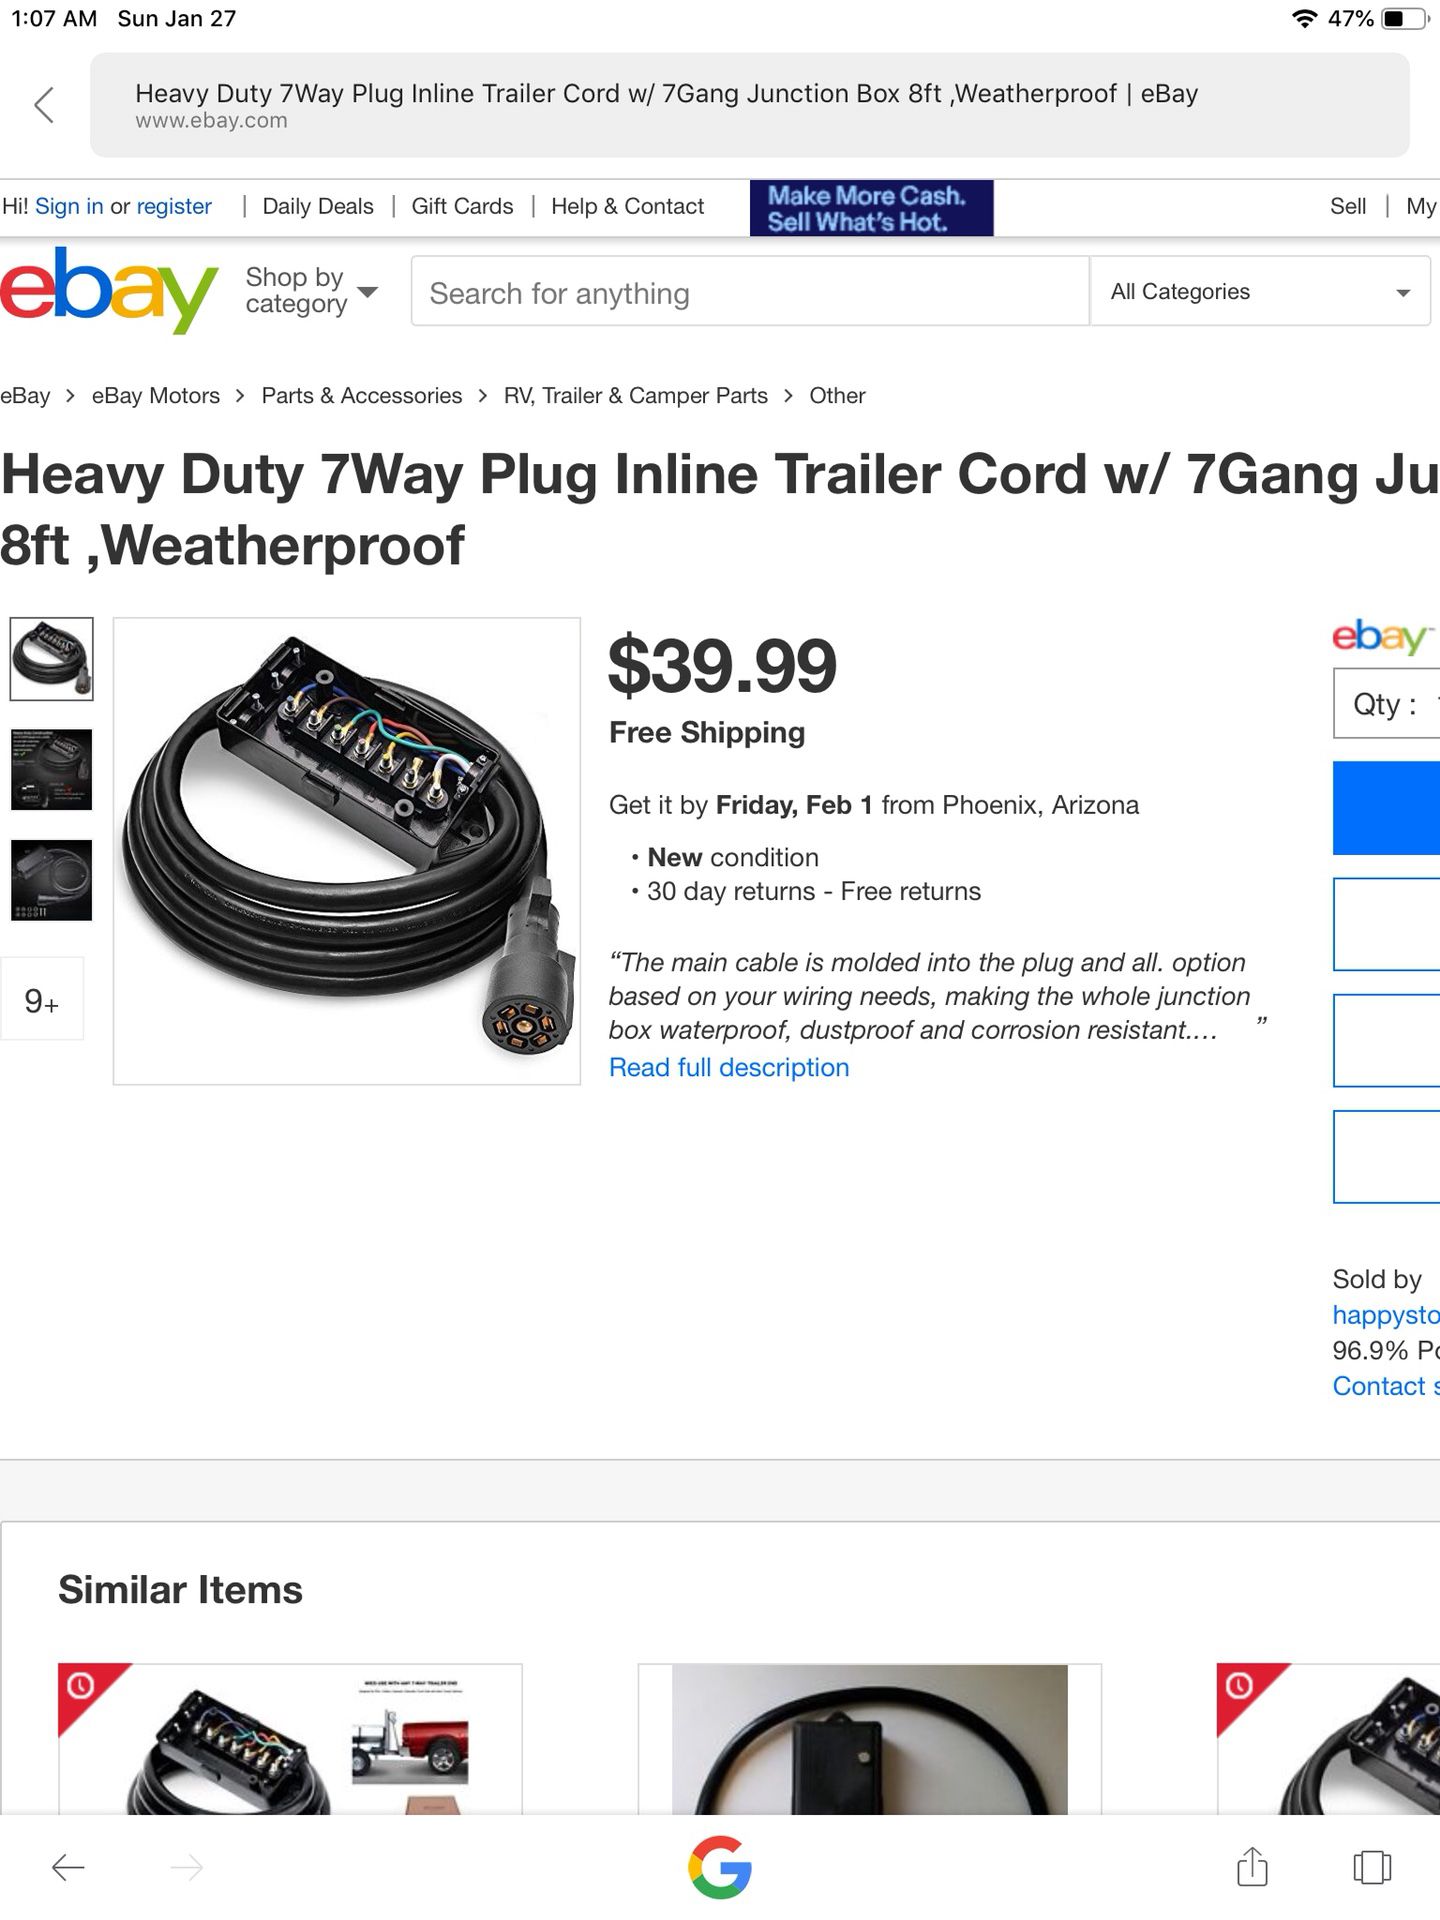 Heavy duty 7 way inline trailer cord